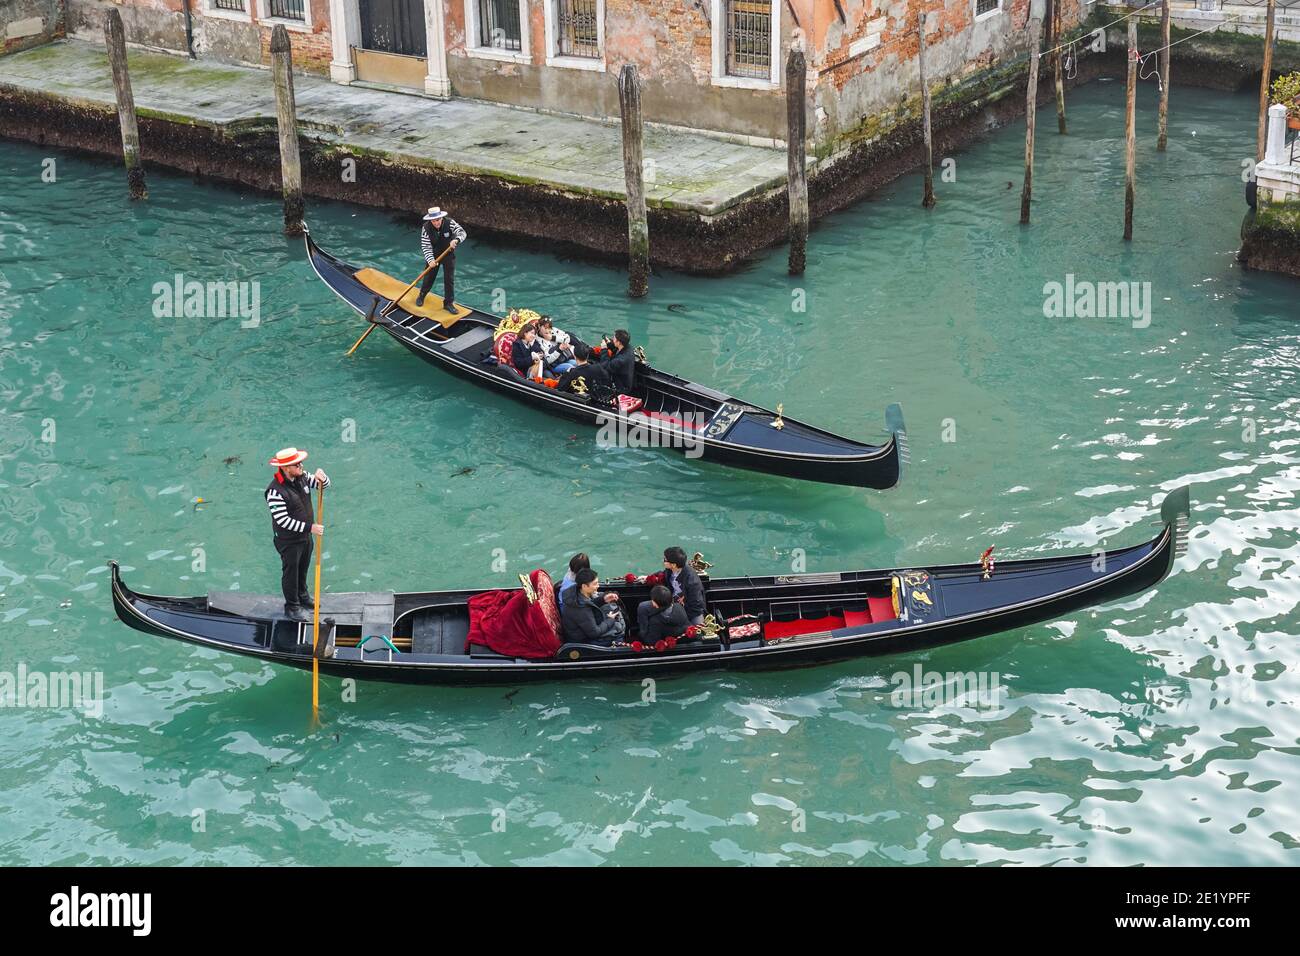 Gondole vénitienne traditionnelle, gondoles avec touristes sur le Grand Canal à Venise, Italie Banque D'Images